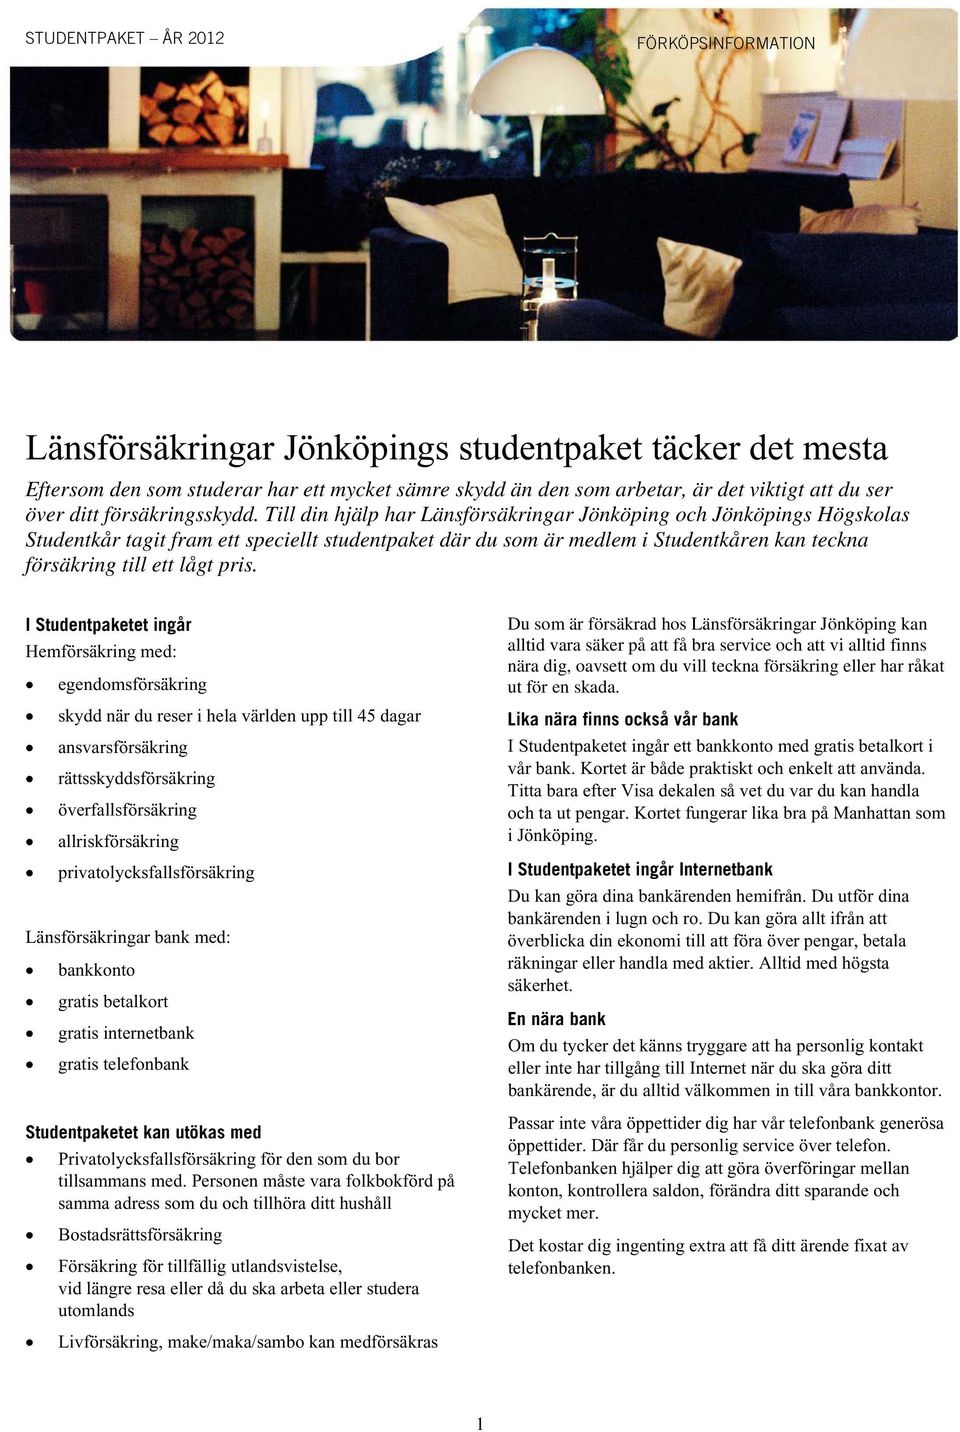 Till din hjälp har Länsförsäkringar Jönköping och Jönköpings Högskolas Studentkår tagit fram ett speciellt studentpaket där du som är medlem i Studentkåren kan teckna försäkring till ett lågt pris.